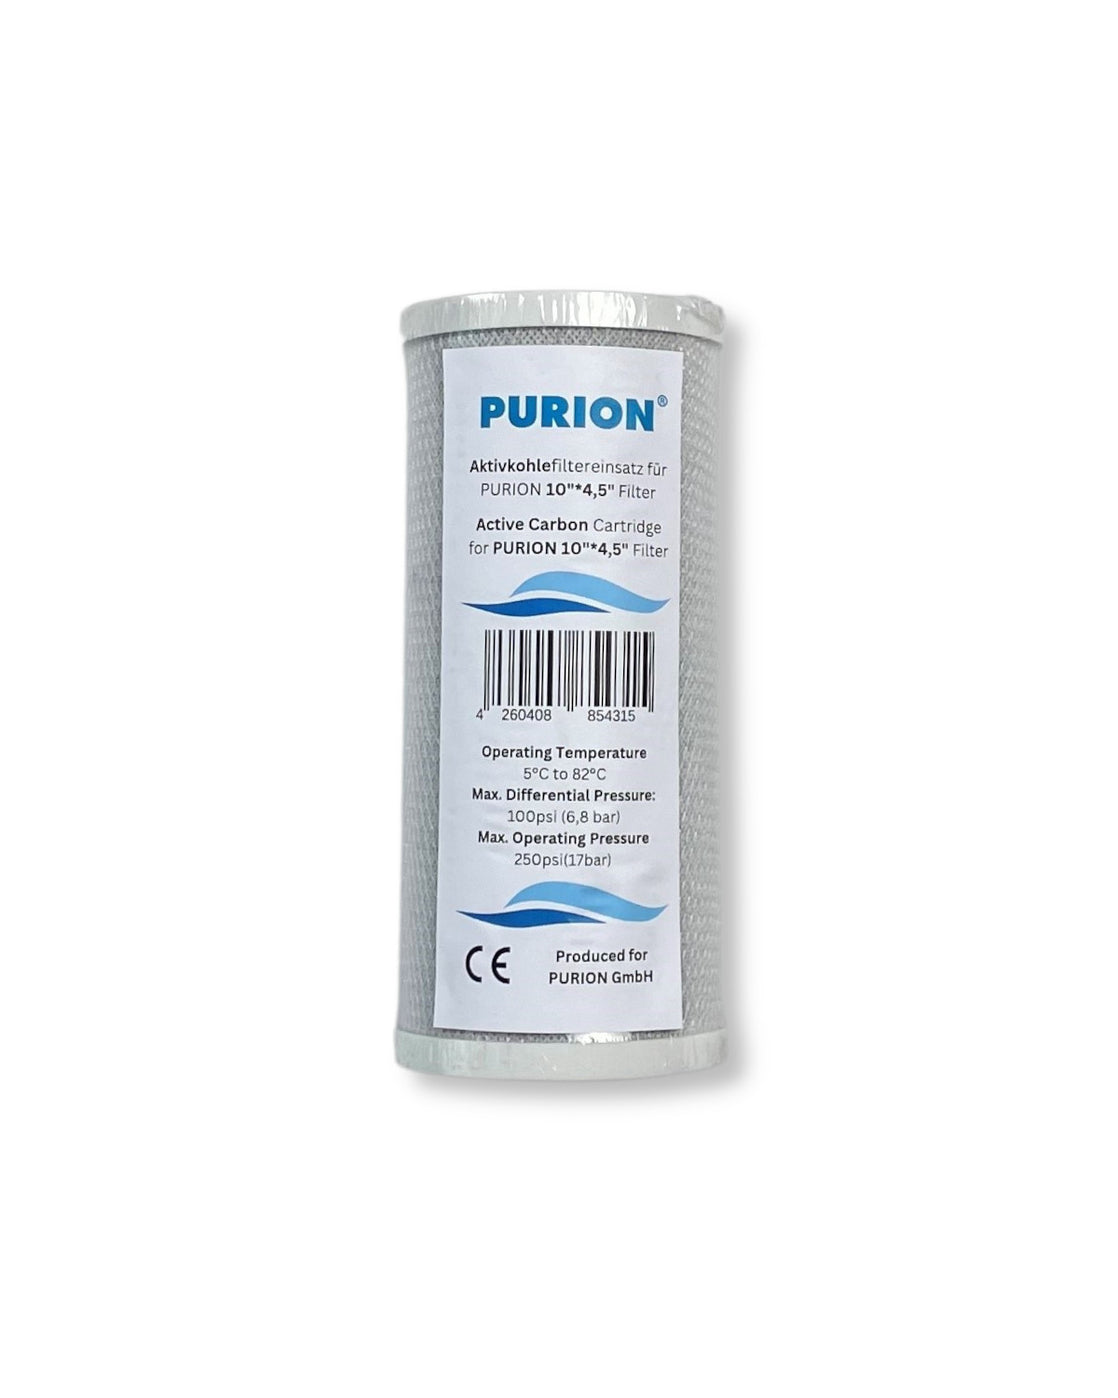 PURION 2500 90 W Starter-Wasserfilterkartusche der Purion GmbH für UV-Anlage und Desinfektion von Wasser. Diese Kartusche erfüllt hohe Qualitätsstandards bei der Wasseraufbereitung für das Purion-System.